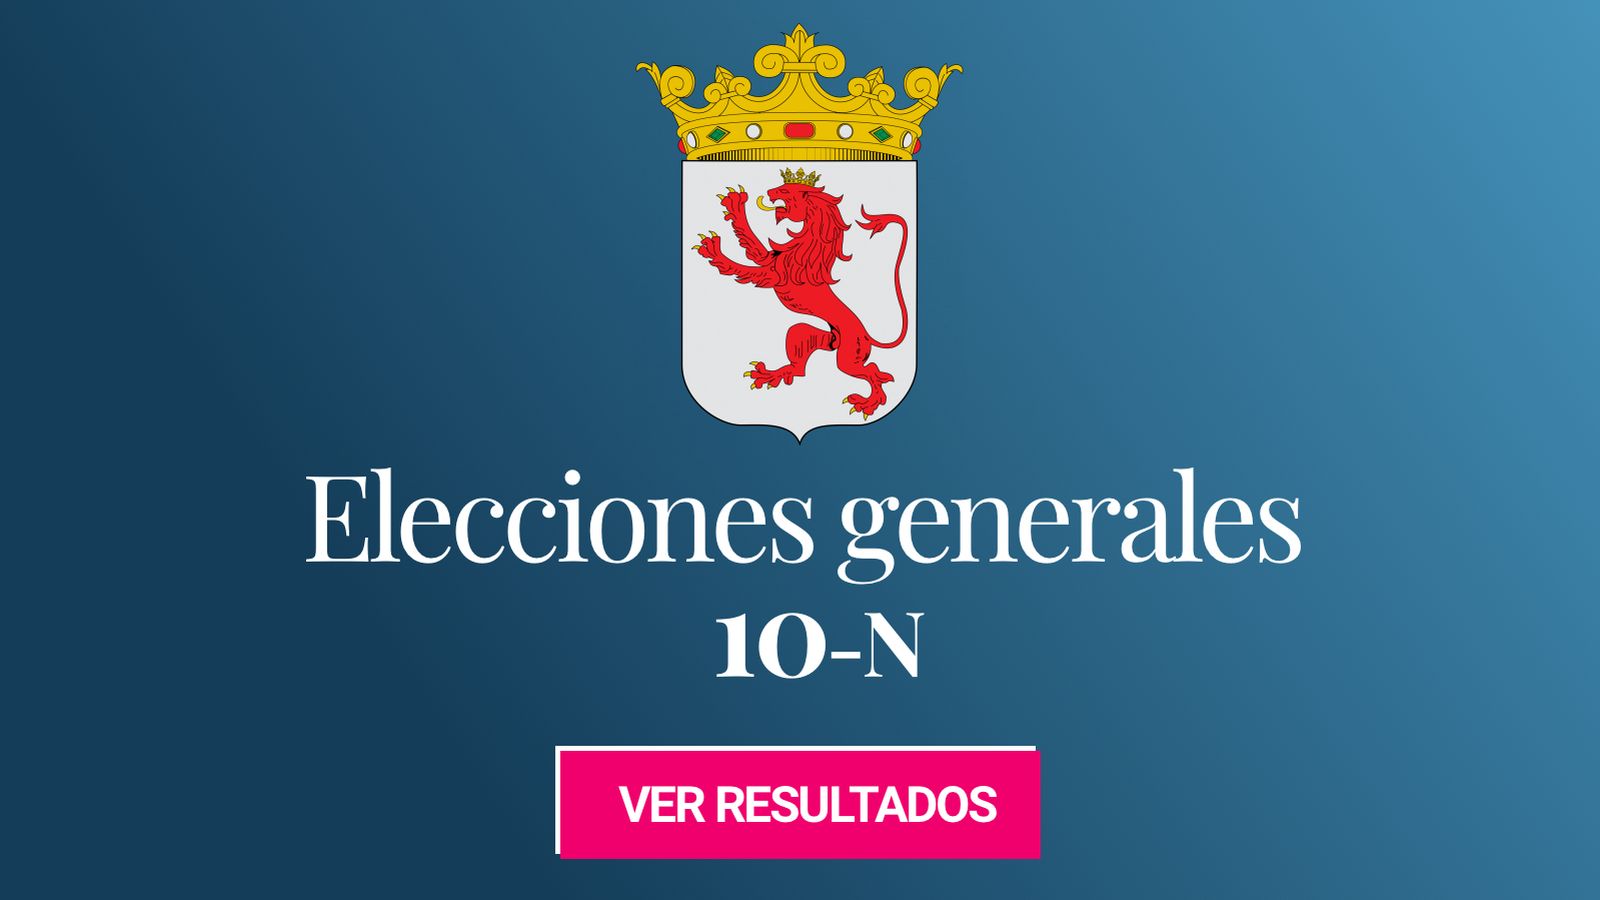 Foto: Elecciones generales 2019 en la provincia de León. (C.C./Hansen)